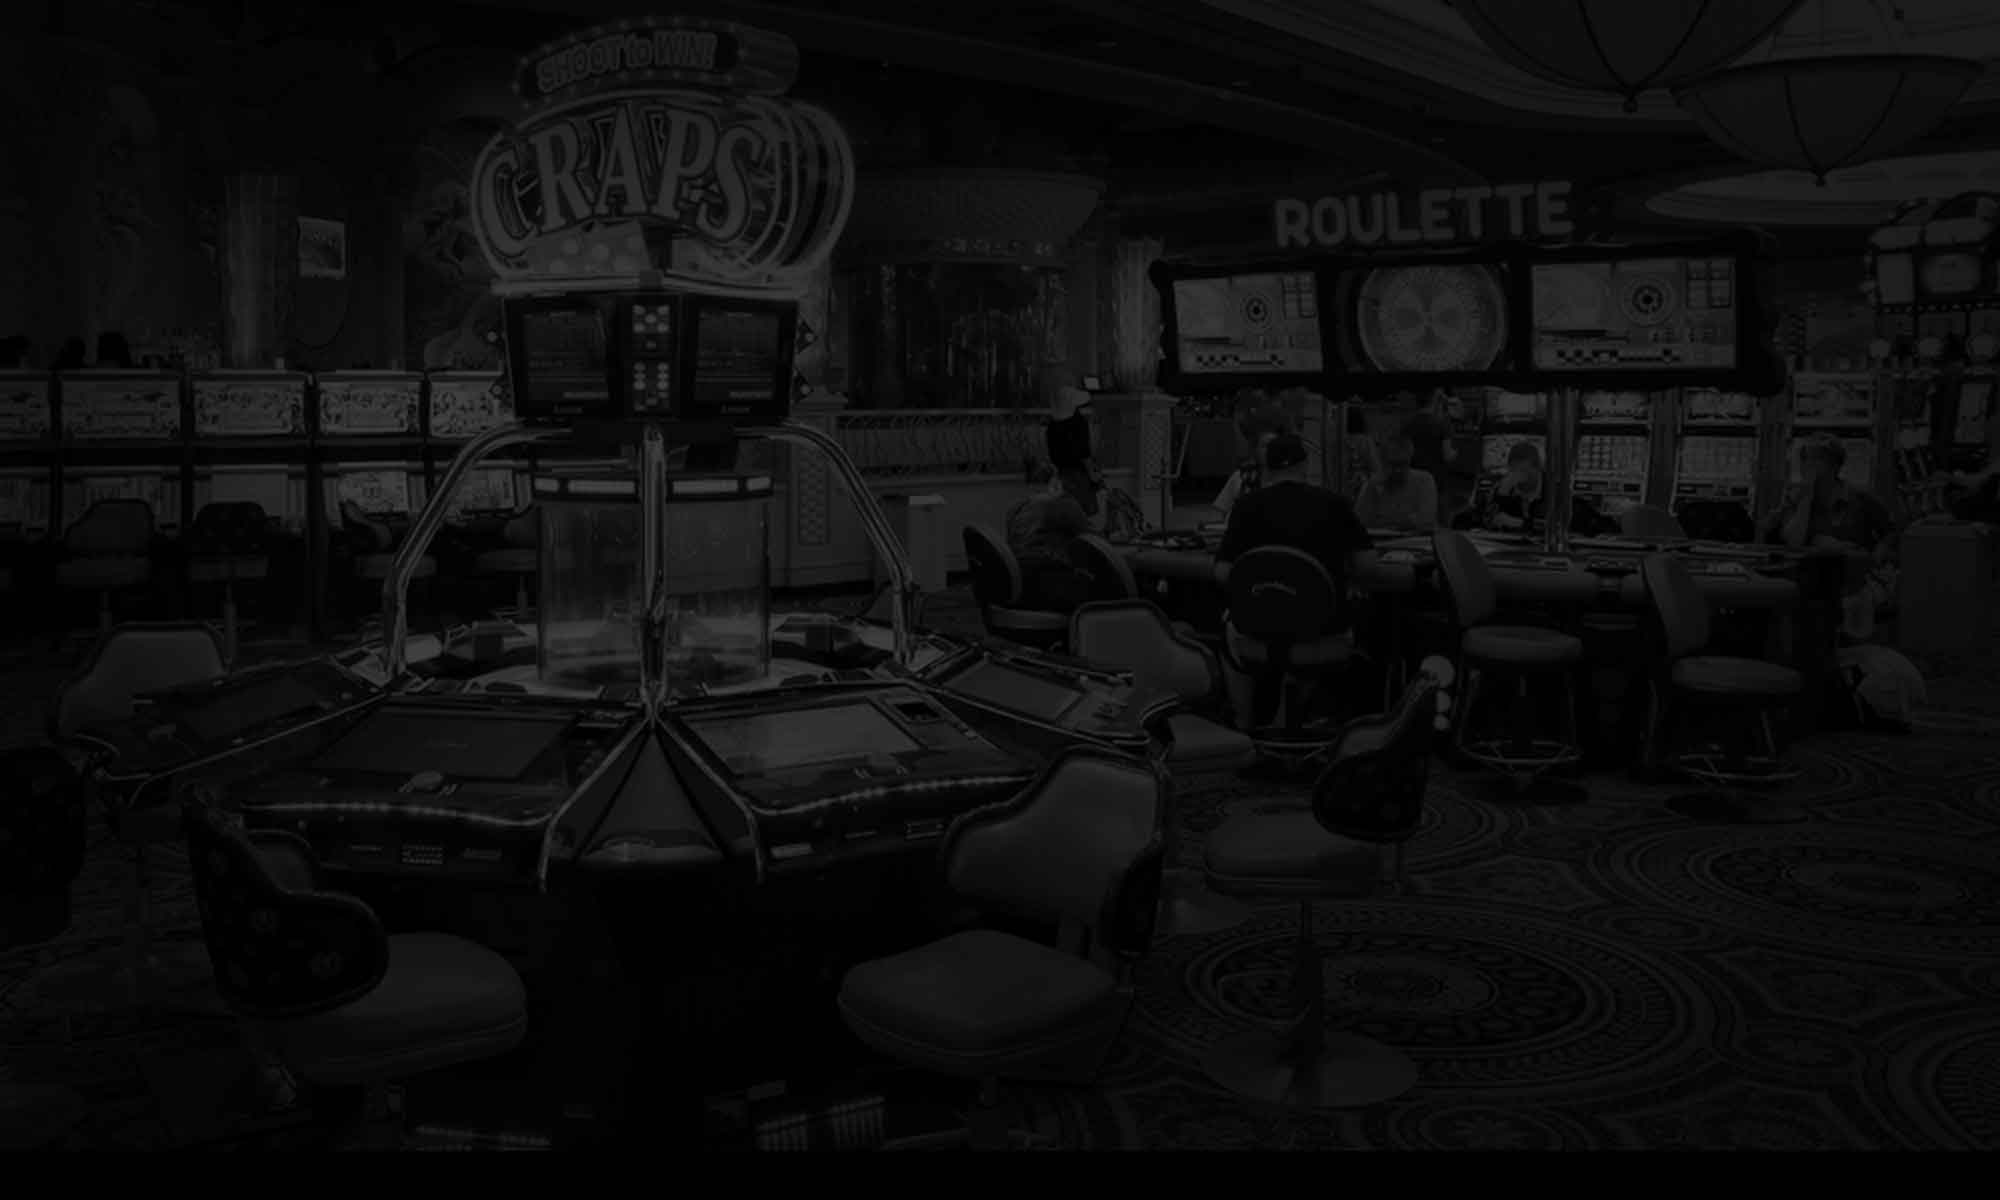 Casino background image